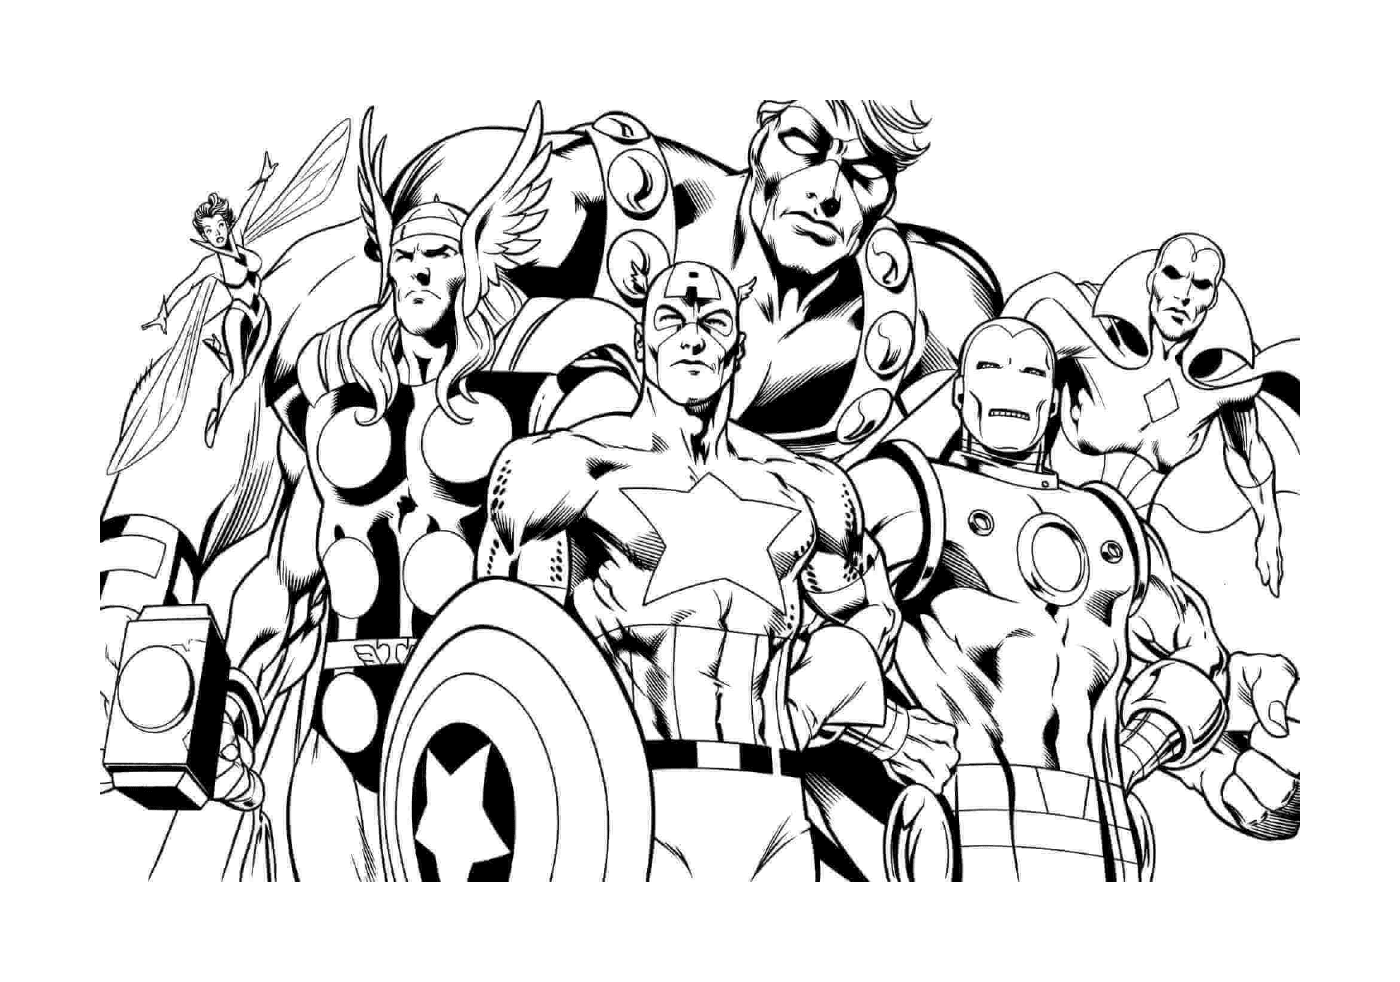  Die Avengers, eine Gruppe von Helden 